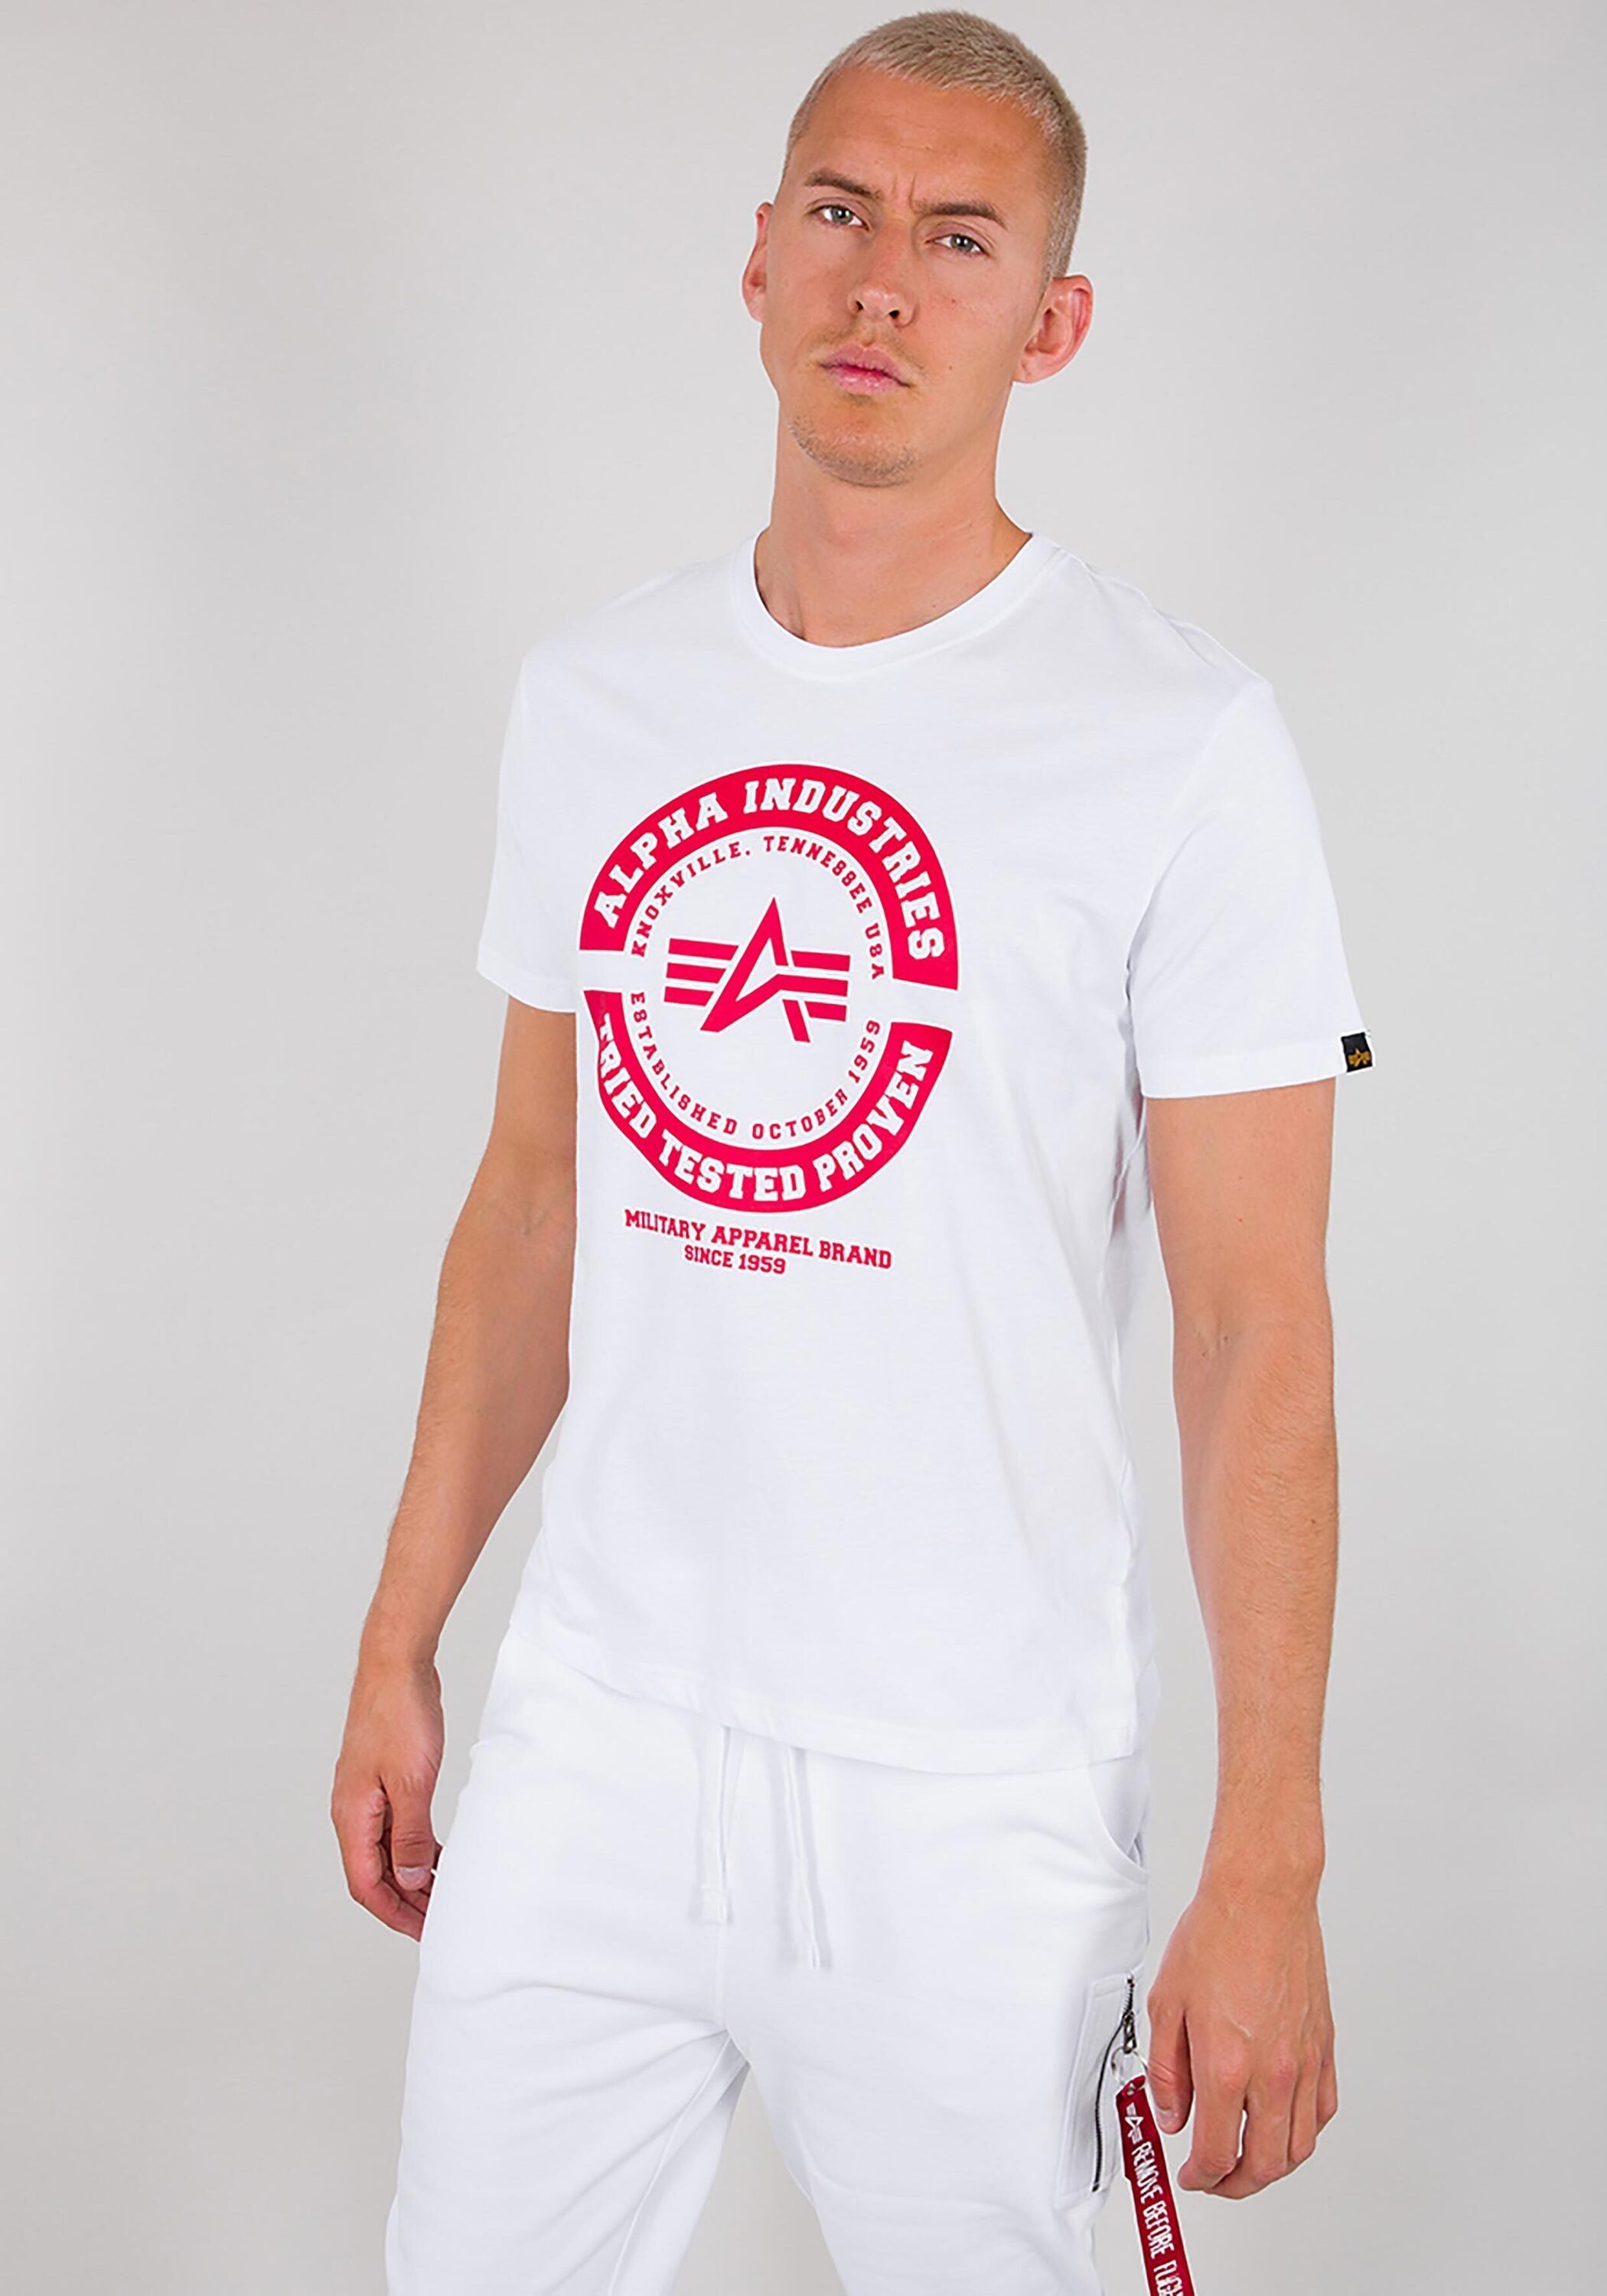 T - Alpha T-Shirt white Industries Industries Alpha Men TTP T-Shirts